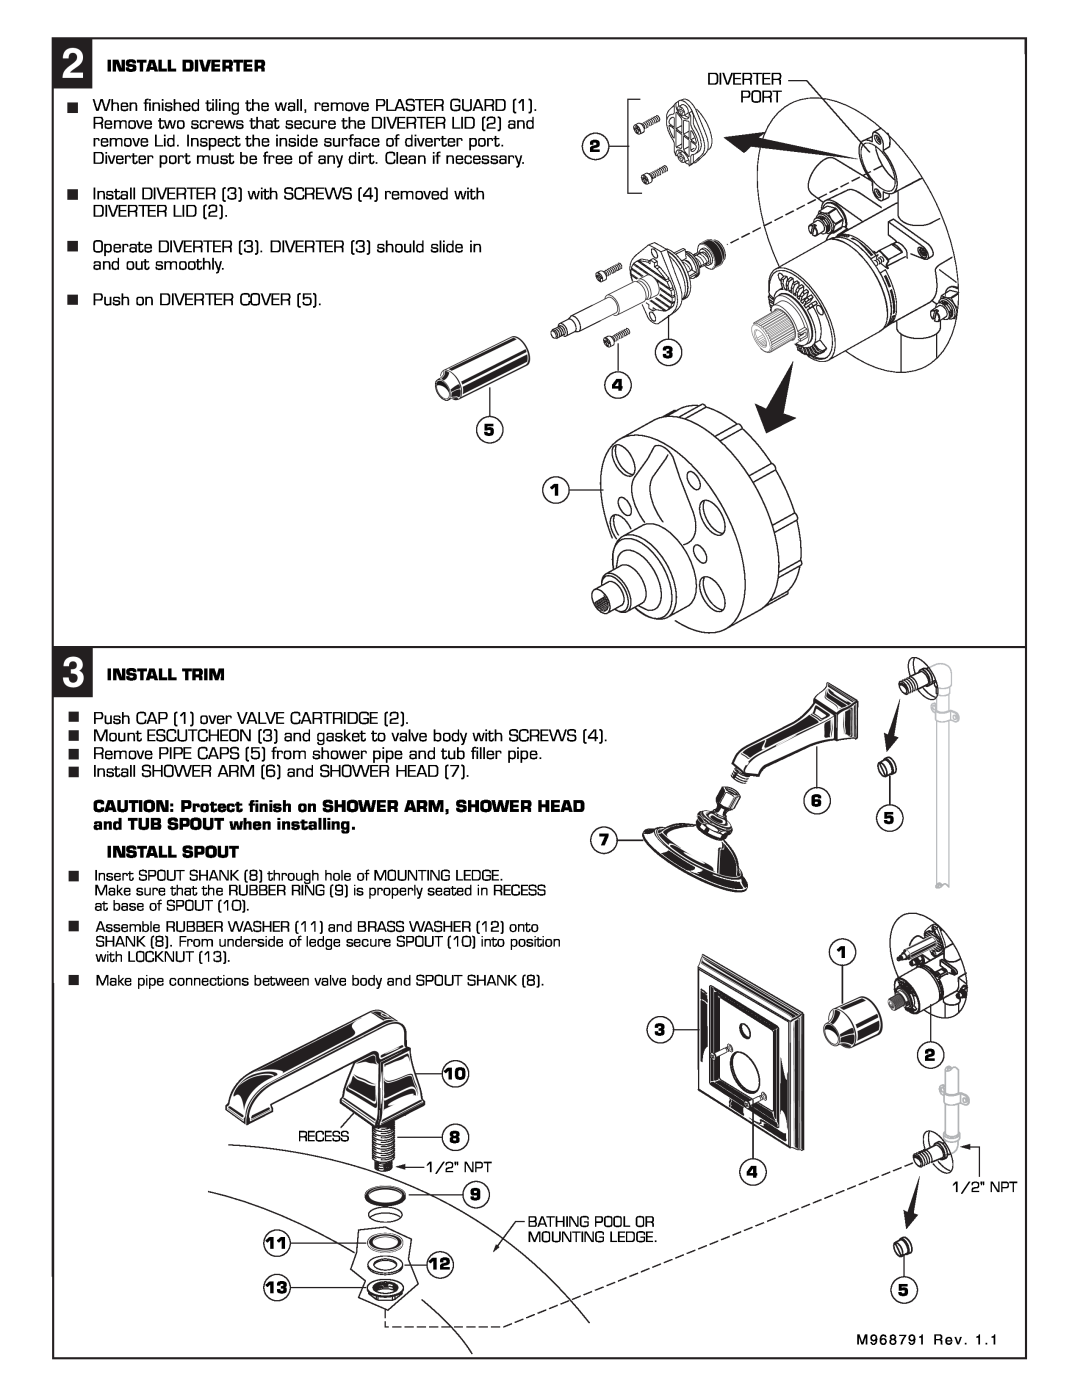 American Standard 2555.652 installation instructions Install Diverter 